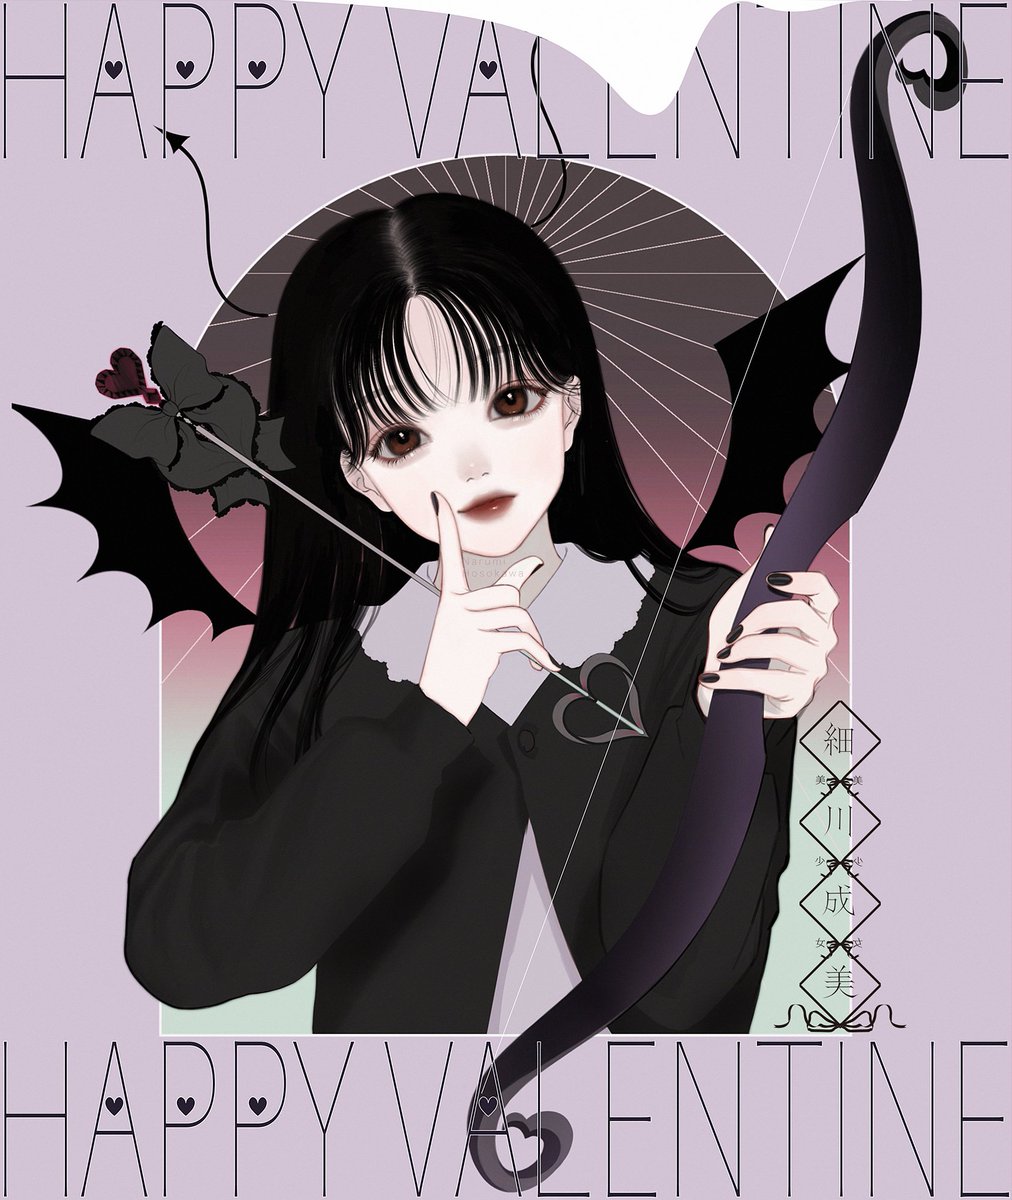 「君をロックオン😈
#ValentinesDay2022 」|細川成美のイラスト